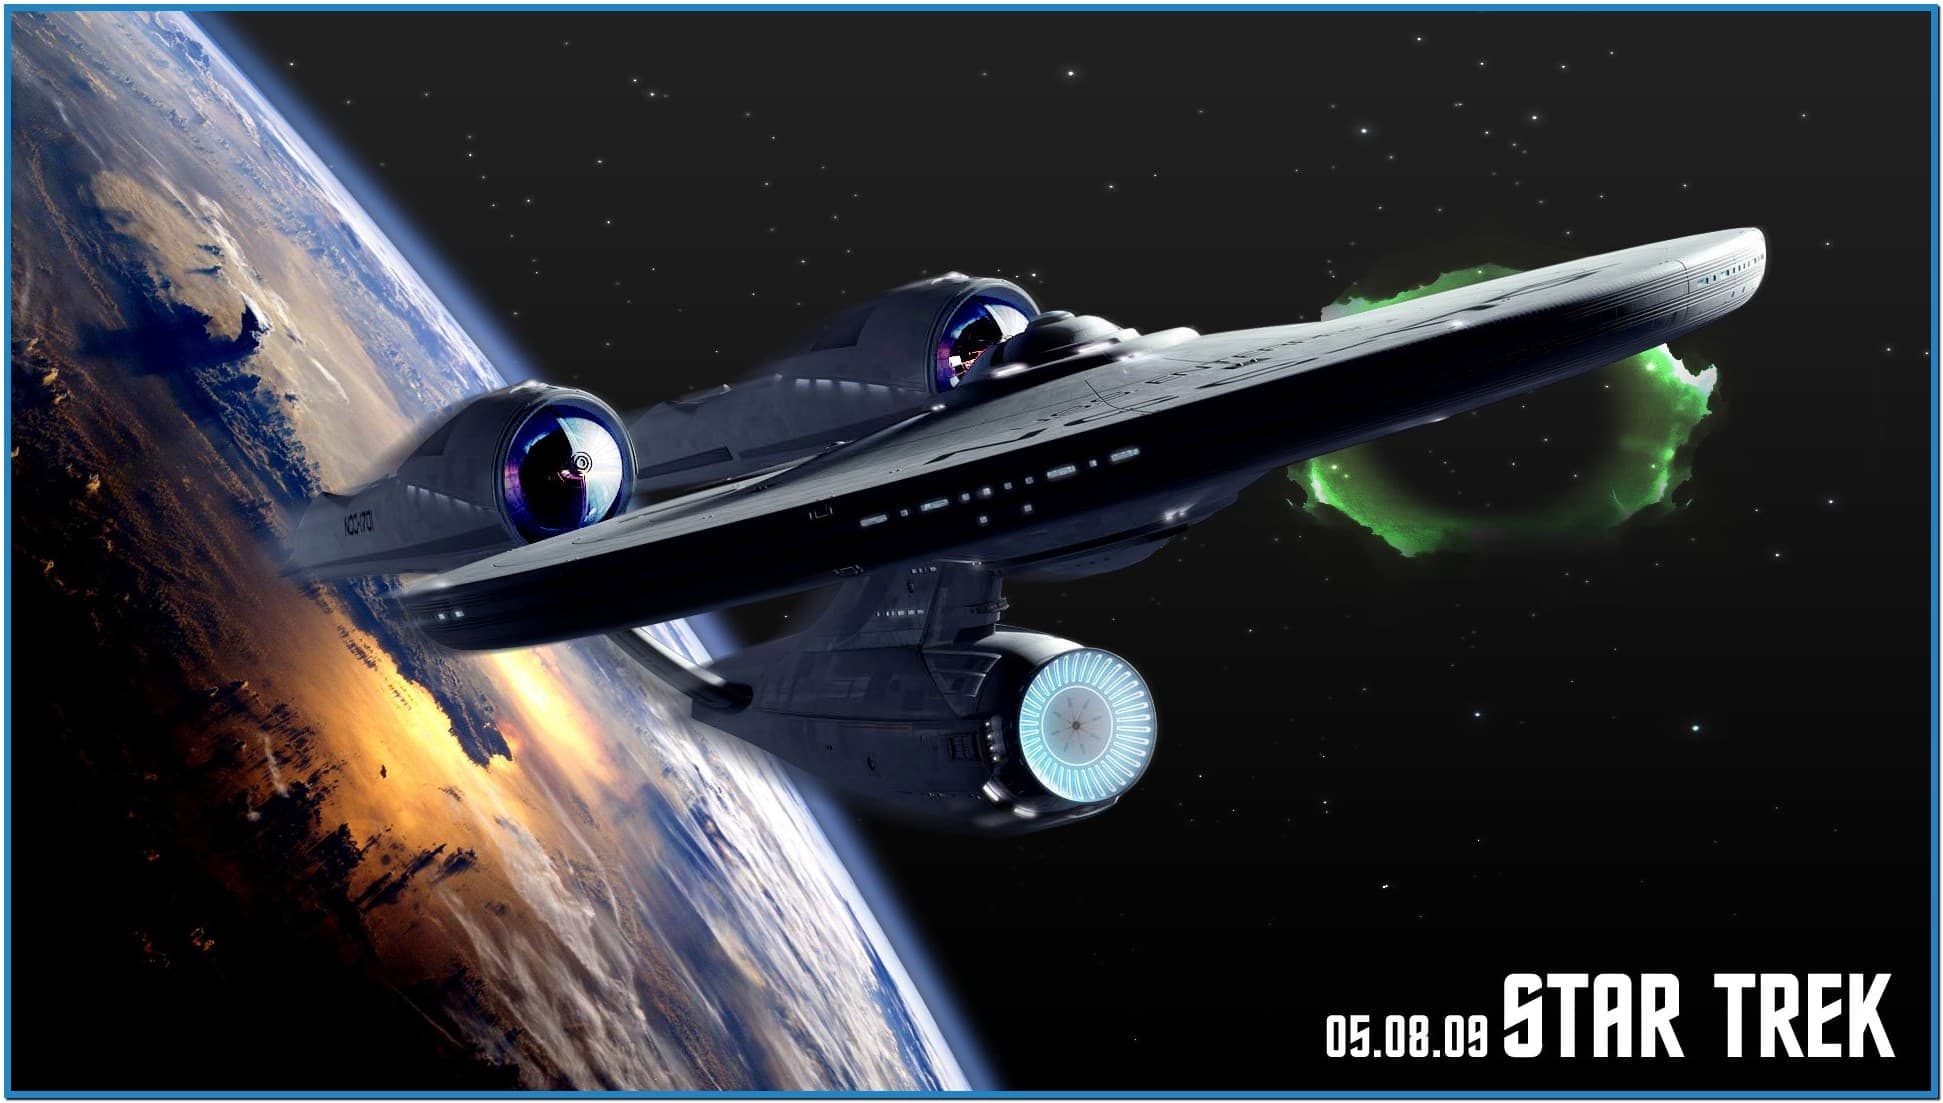 Star Trek Wallpaper And Screensavers